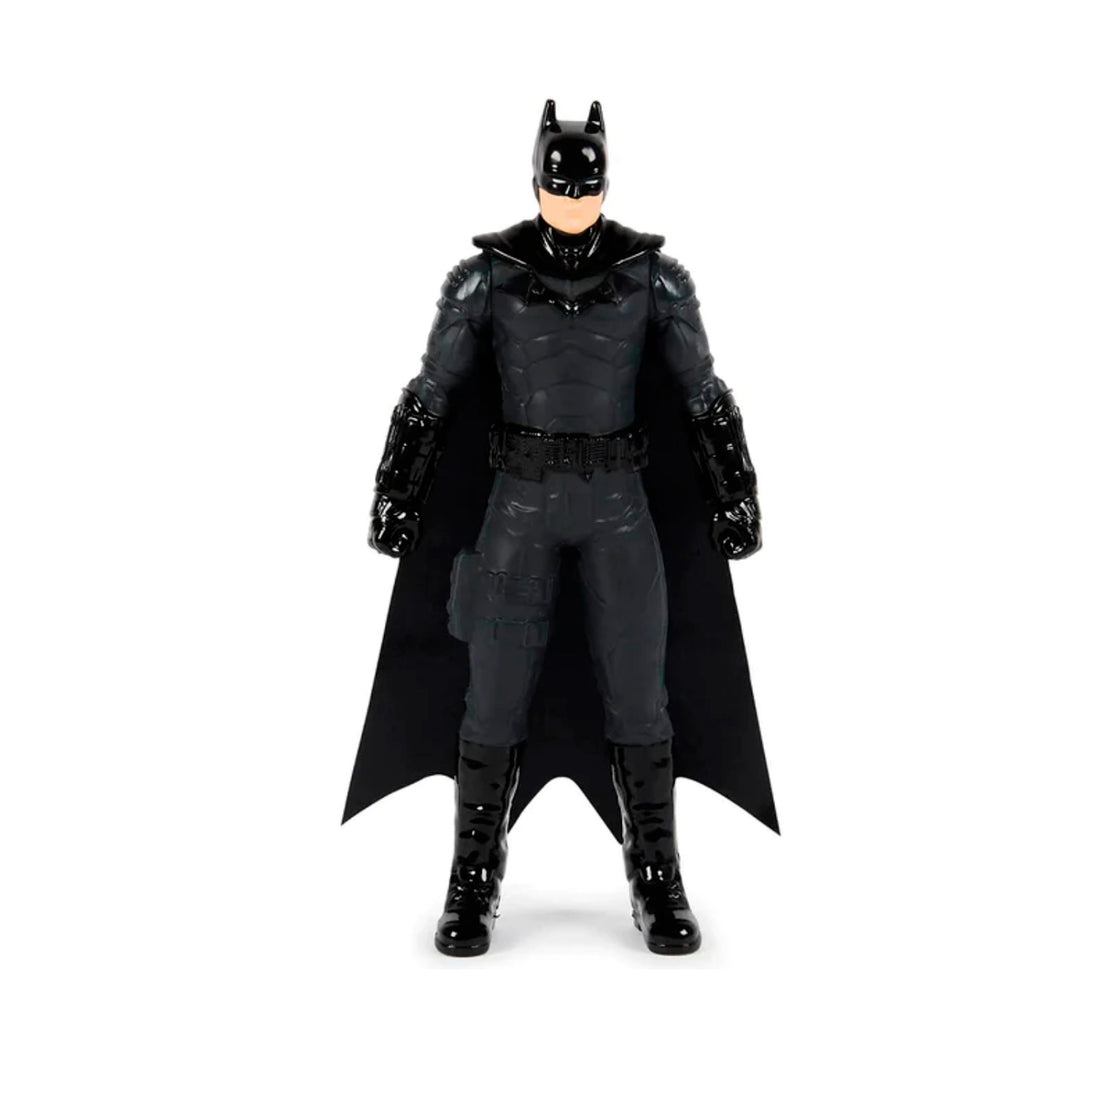 Boneco Batman - Articulado 15cm DC